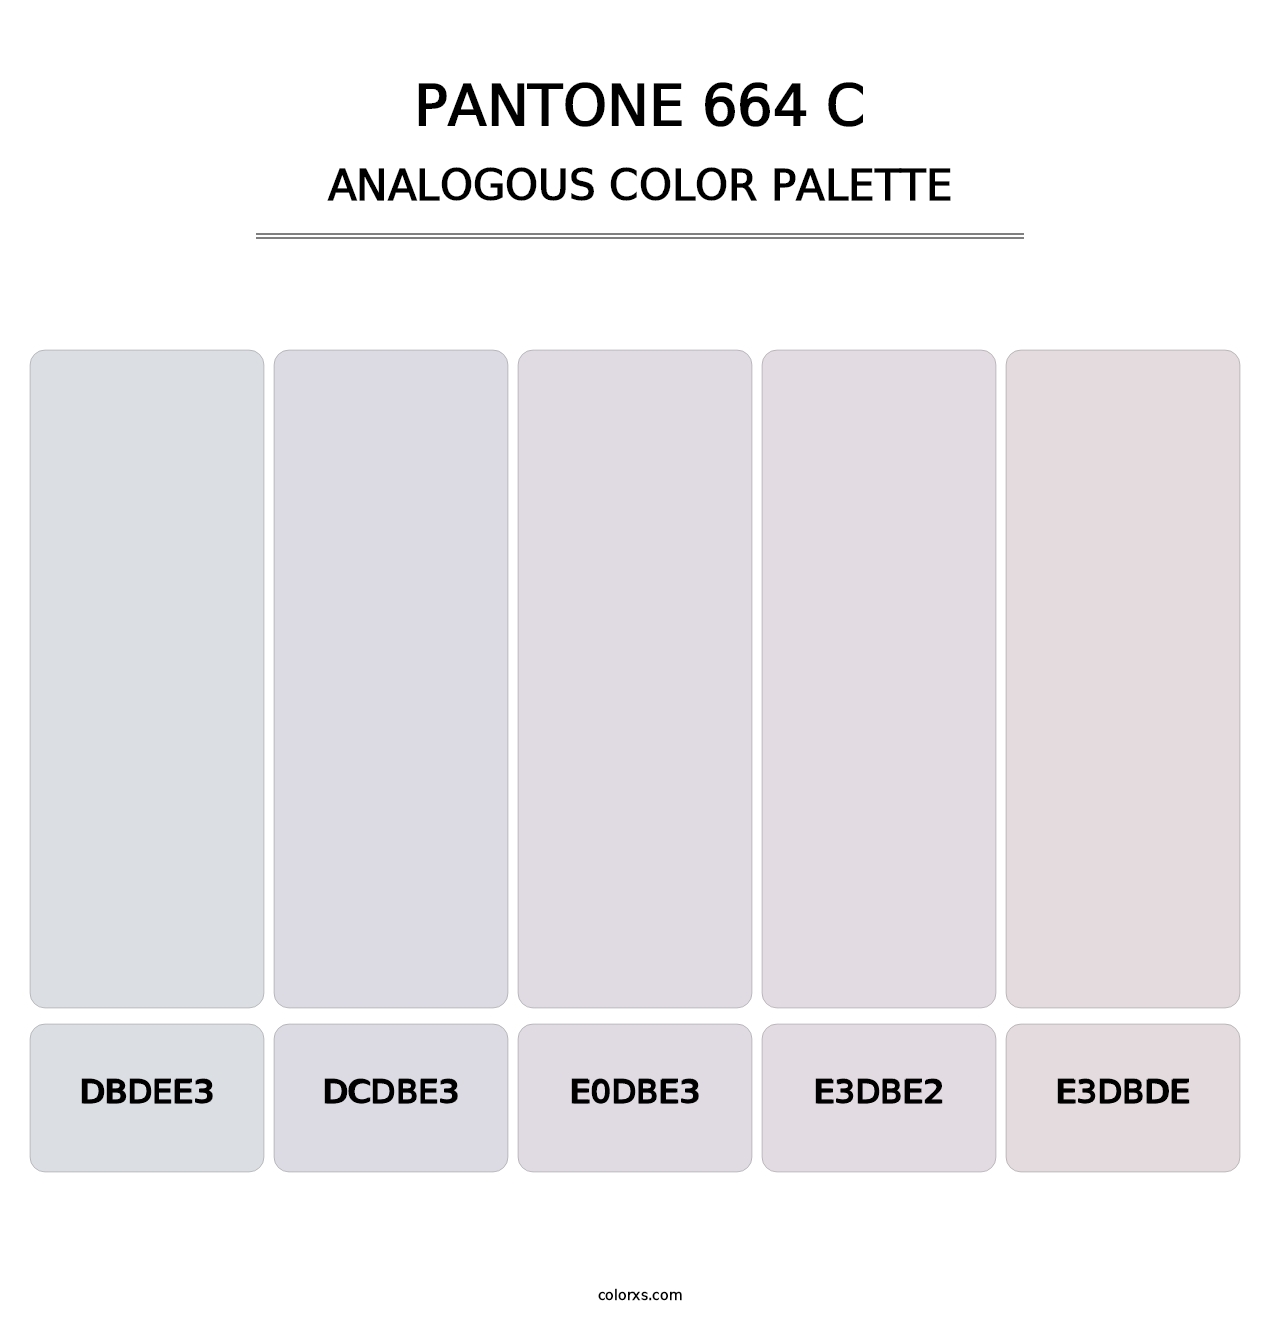 PANTONE 664 C - Analogous Color Palette